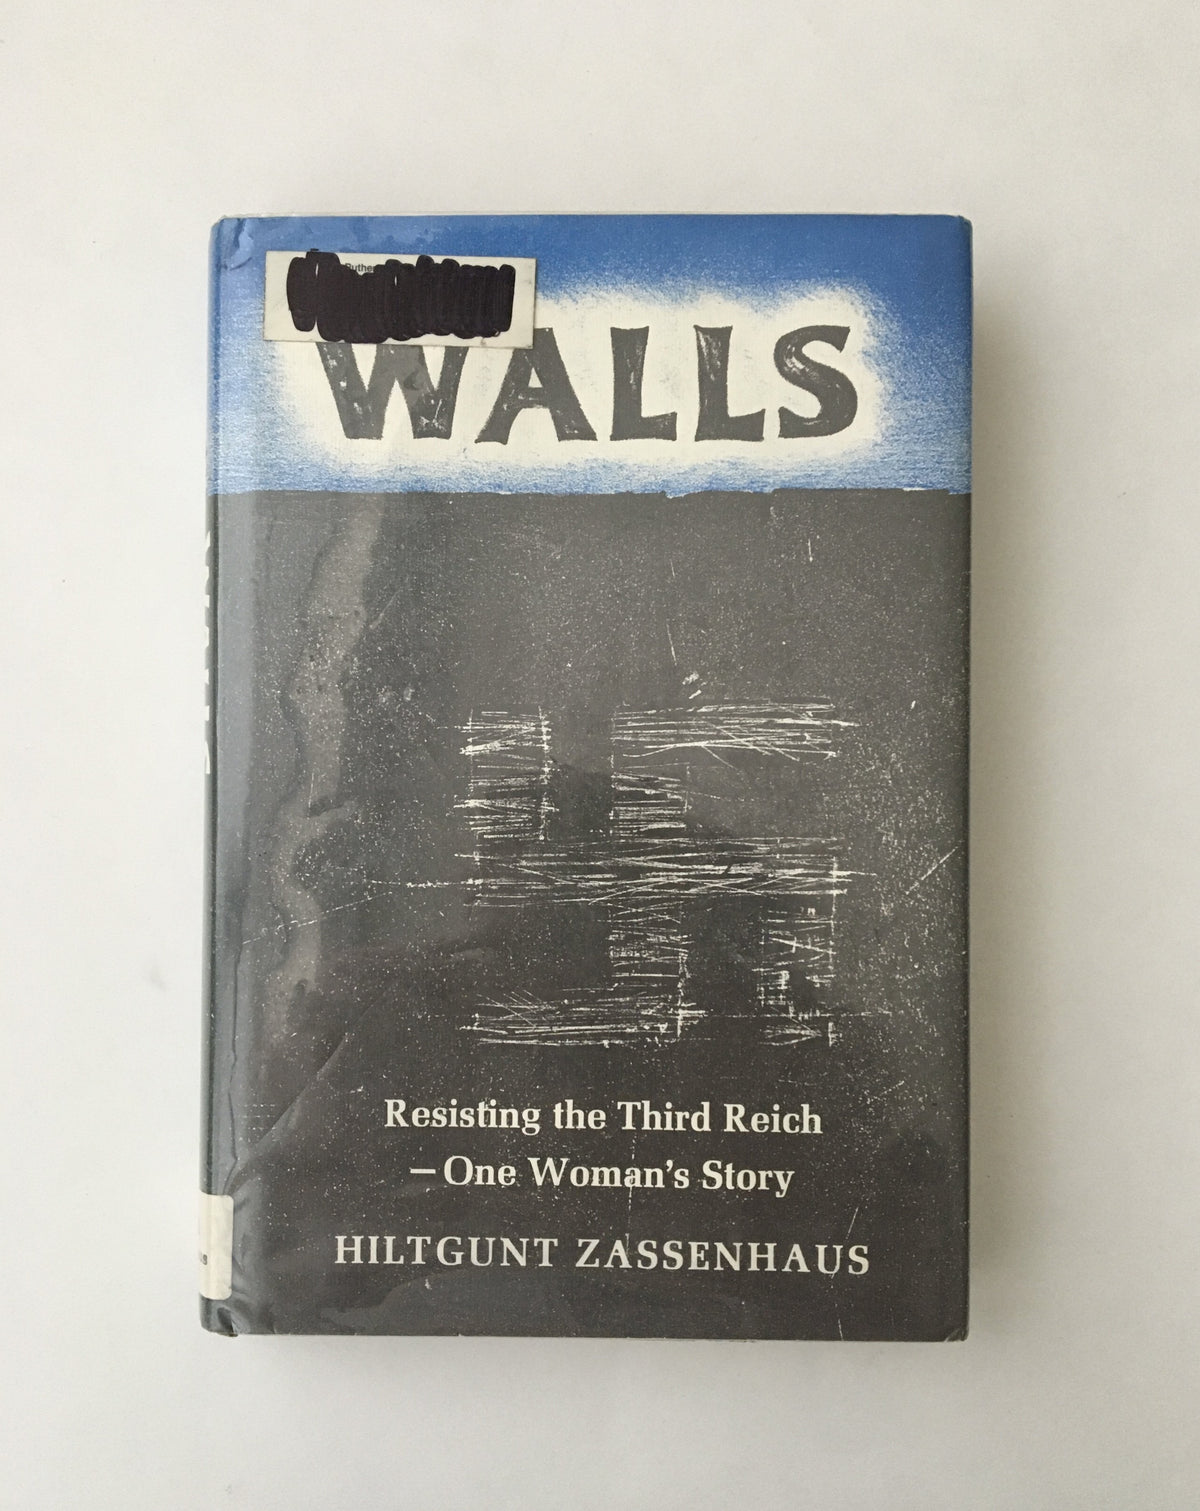 Walls: Resisting the Third Reich by Hiltgunt Zassenhaus